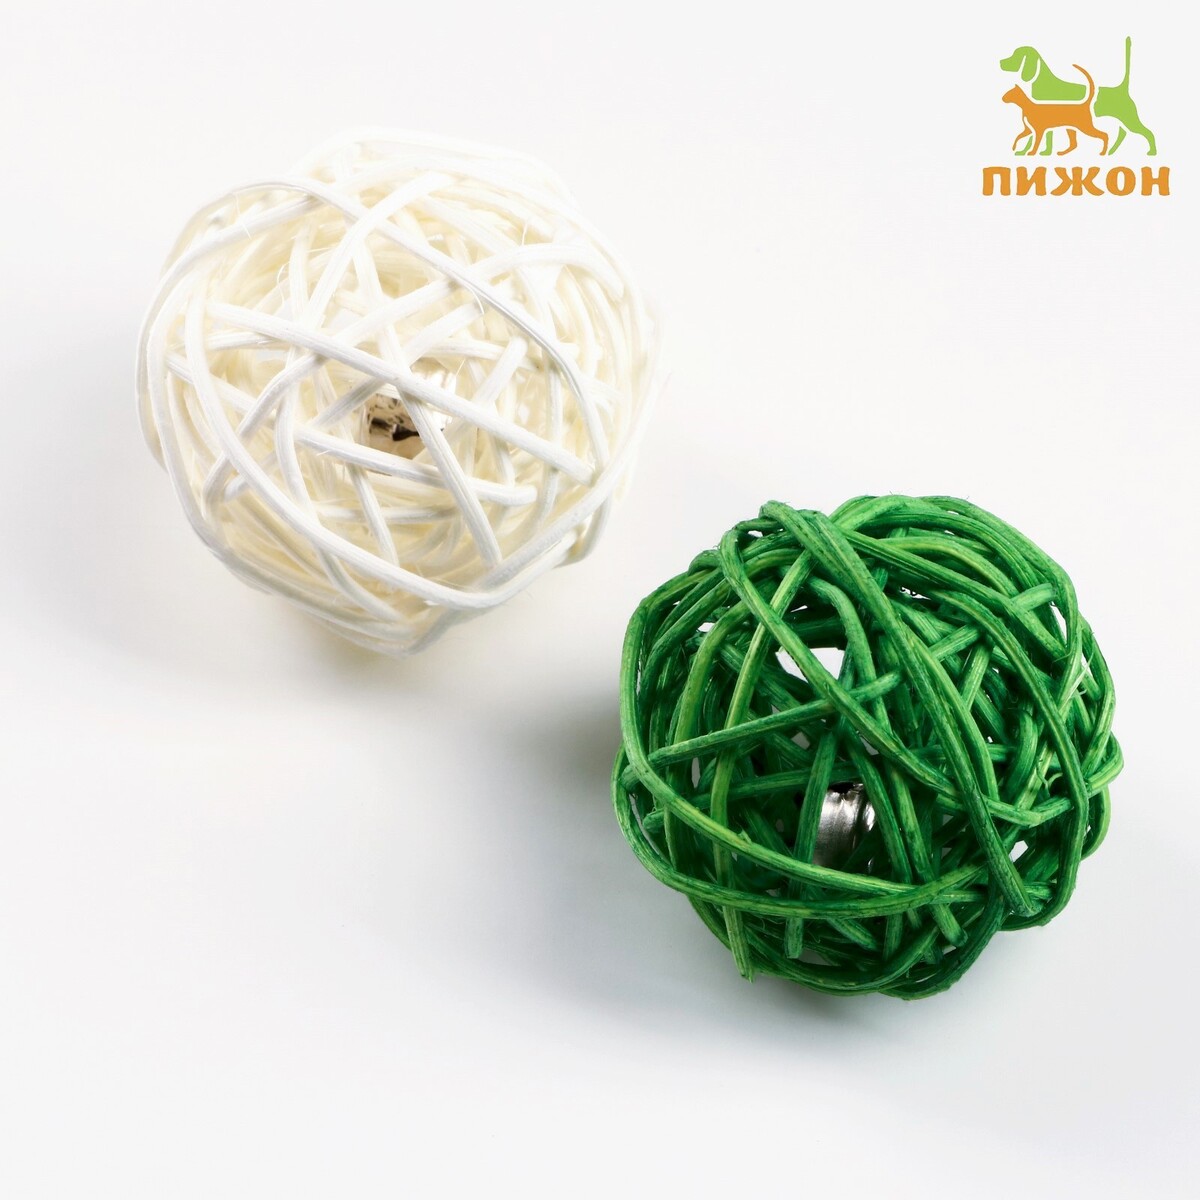 Набор из 2 плетеных шариков из лозы с бубенчиком, 5 см, белый/зеленый набор корзин плетеных 33 x 40 см азалия белый 3 шт